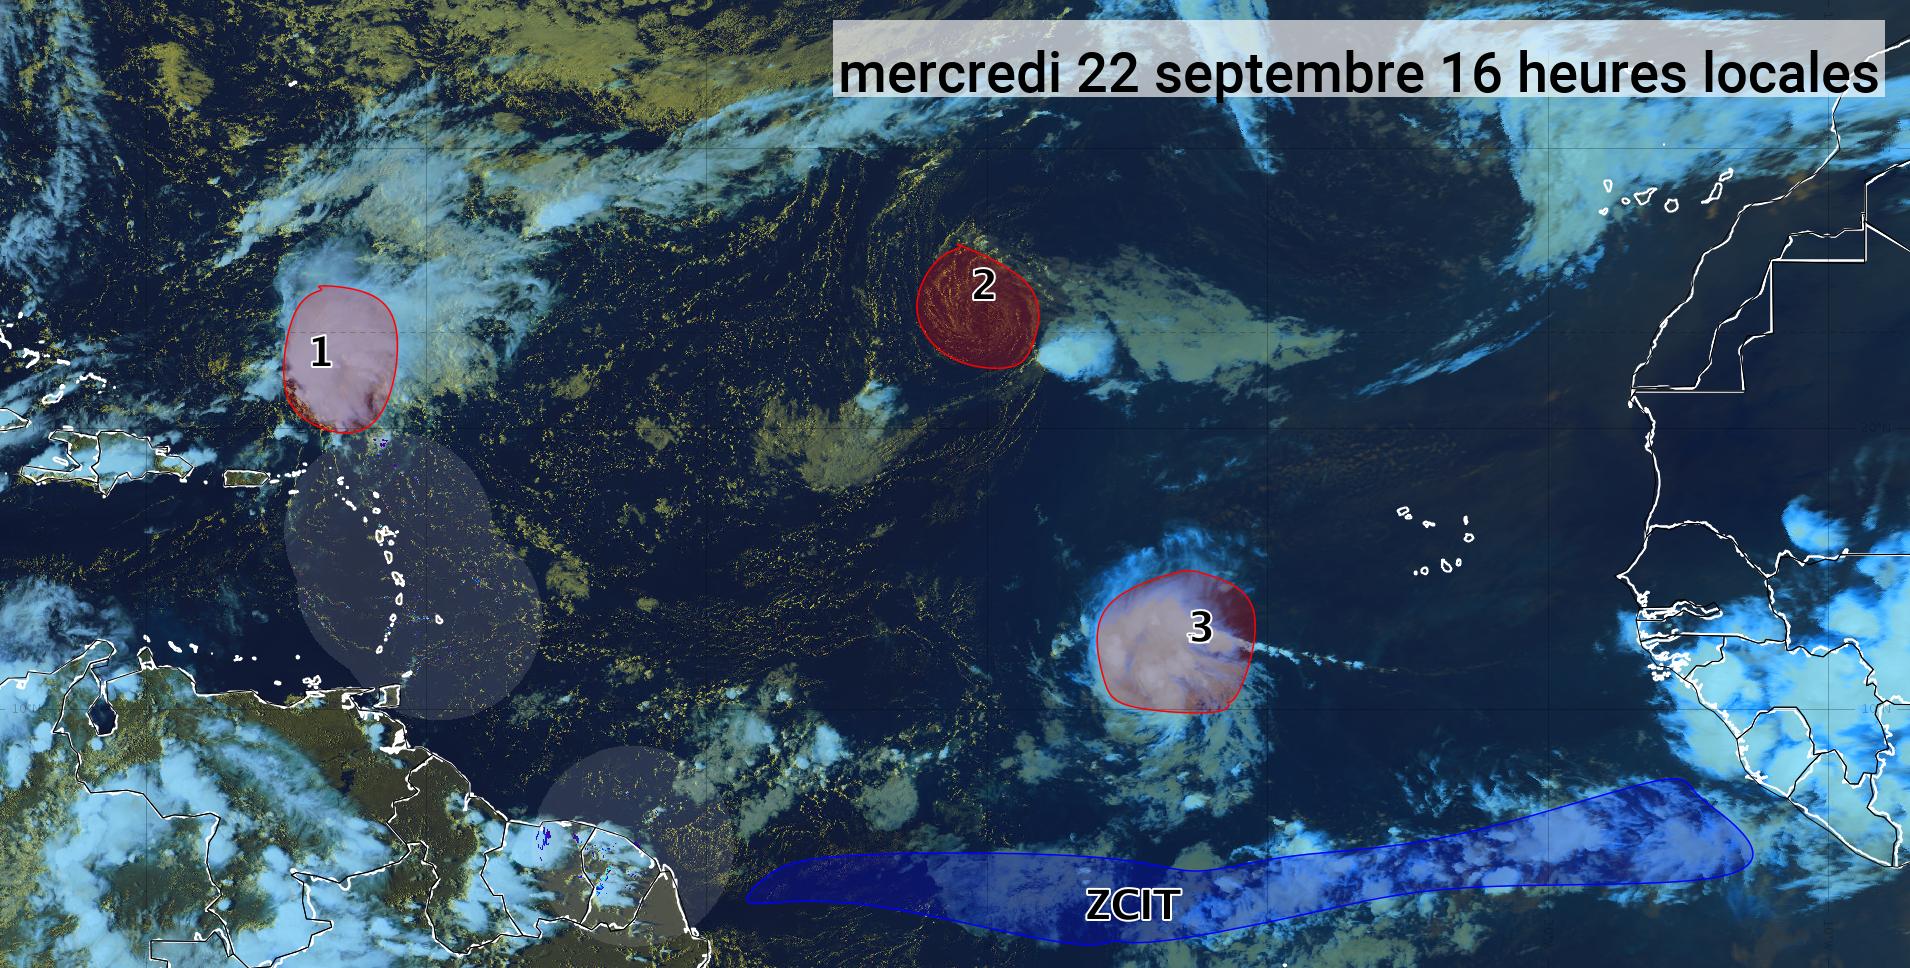     Trois phénomènes cycloniques dans l'Atlantique (bulletin du 22/09/21)

